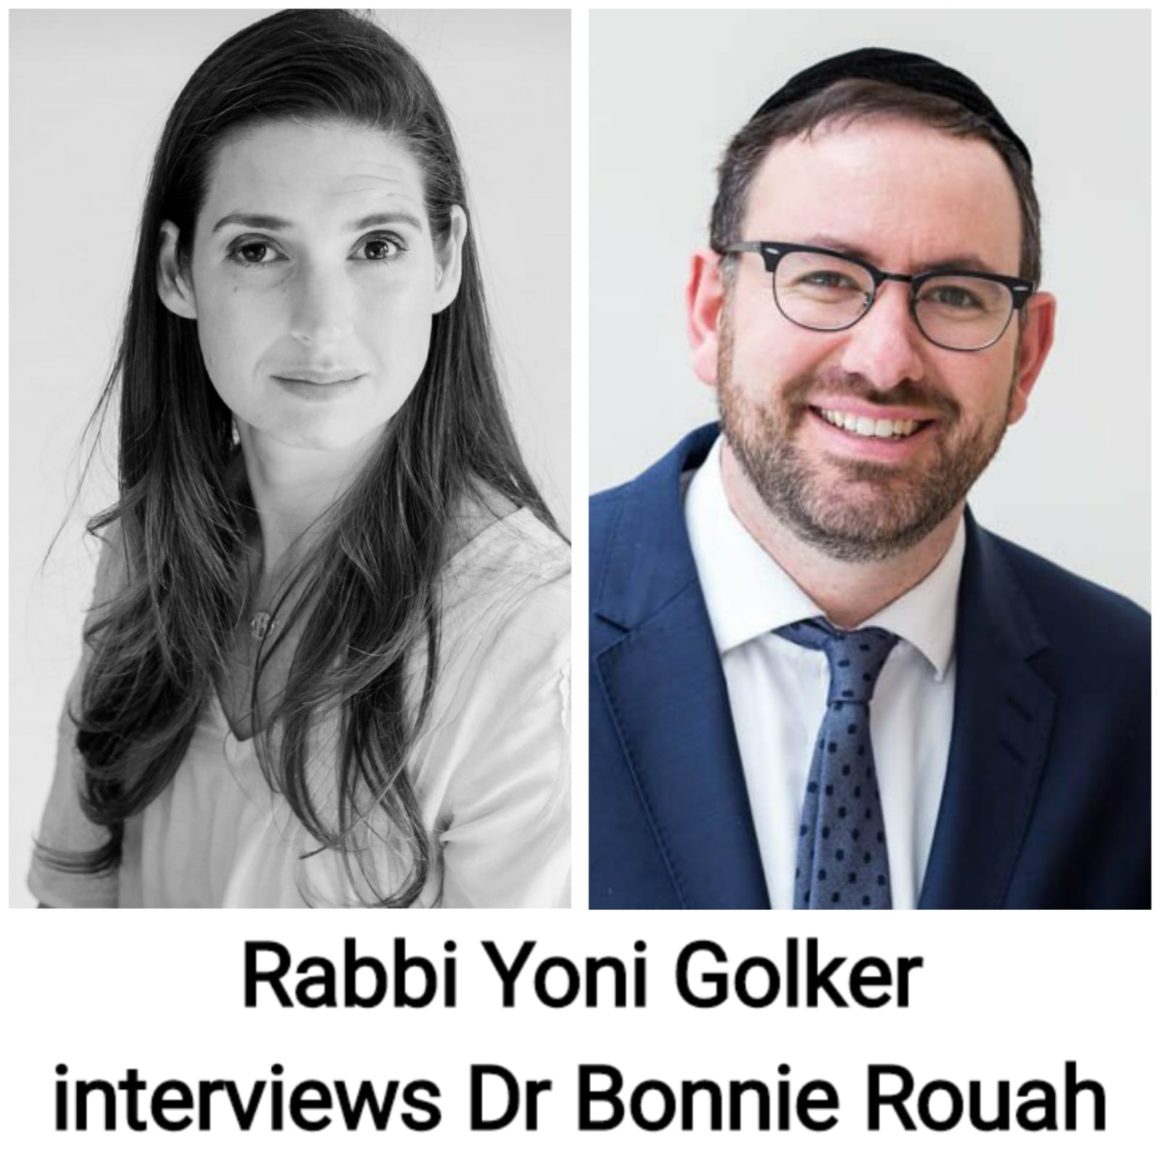 Rabbi Yoni Golker interviews Dr Bonnie Rouah